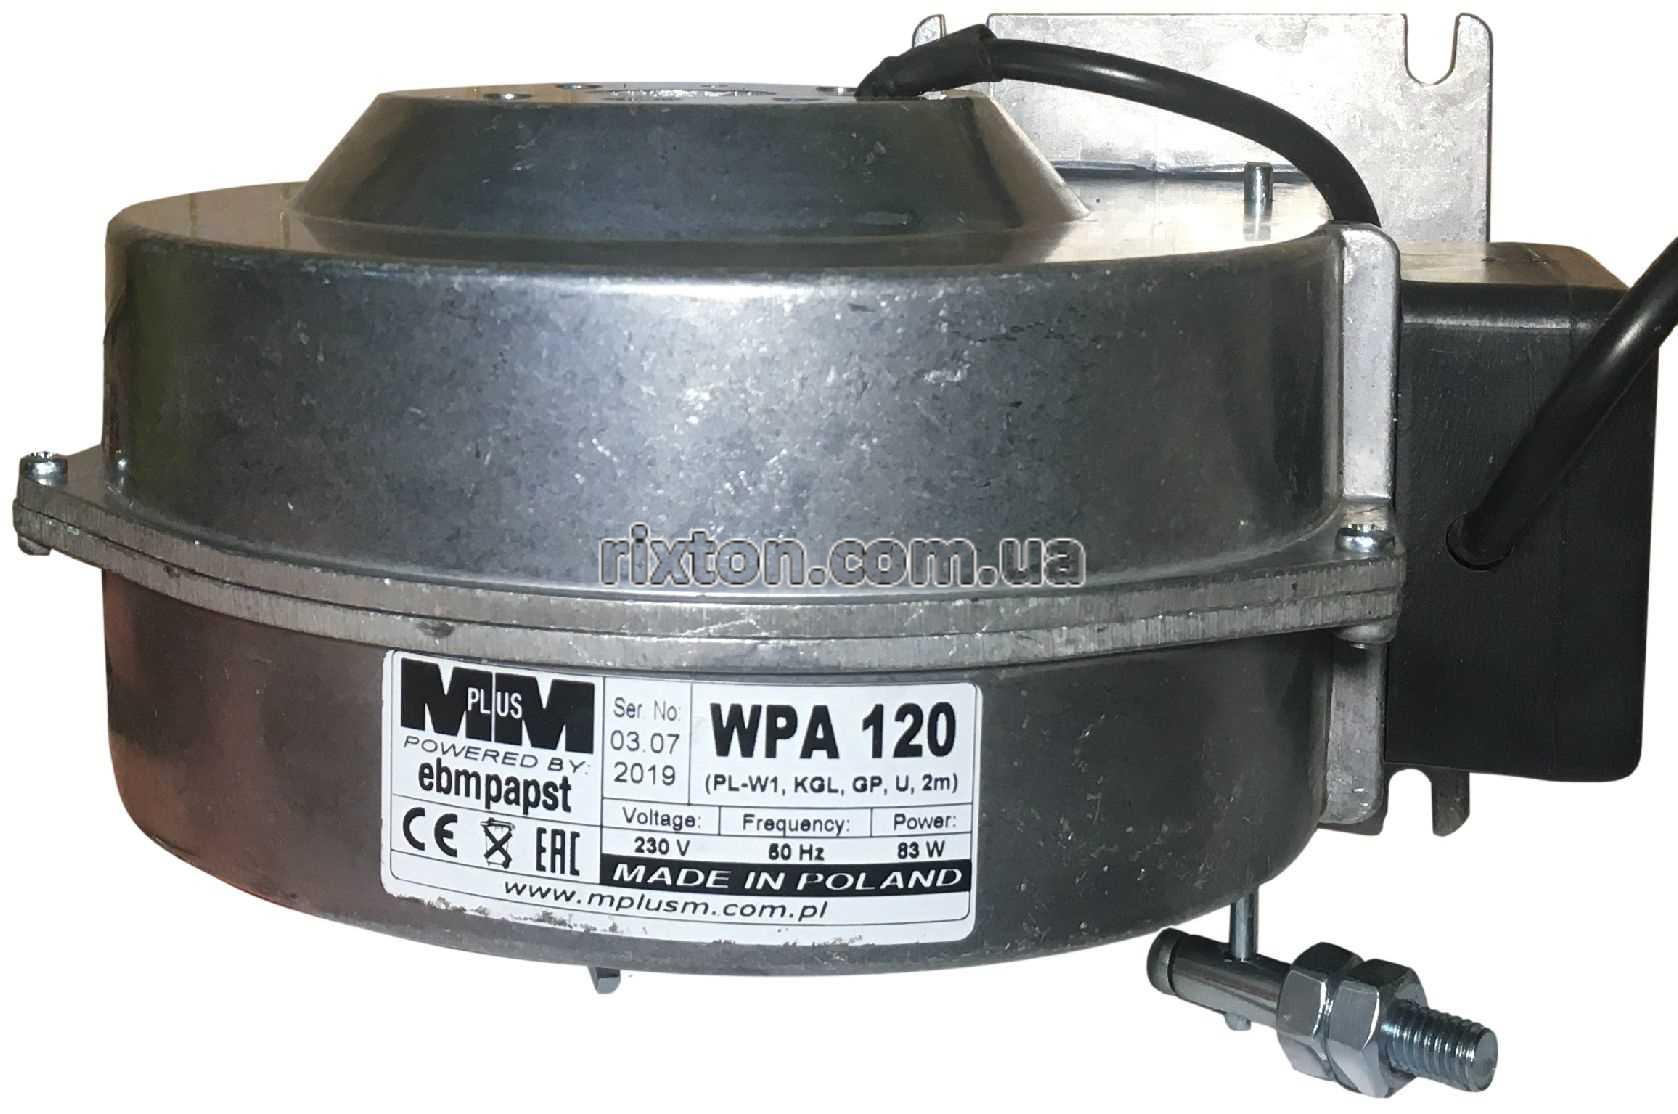 Нагнетательный вентилятор MplusM WPA 120 с диафрагмой (EBM, PL(W1), KGL, GP, U, 2,0м)